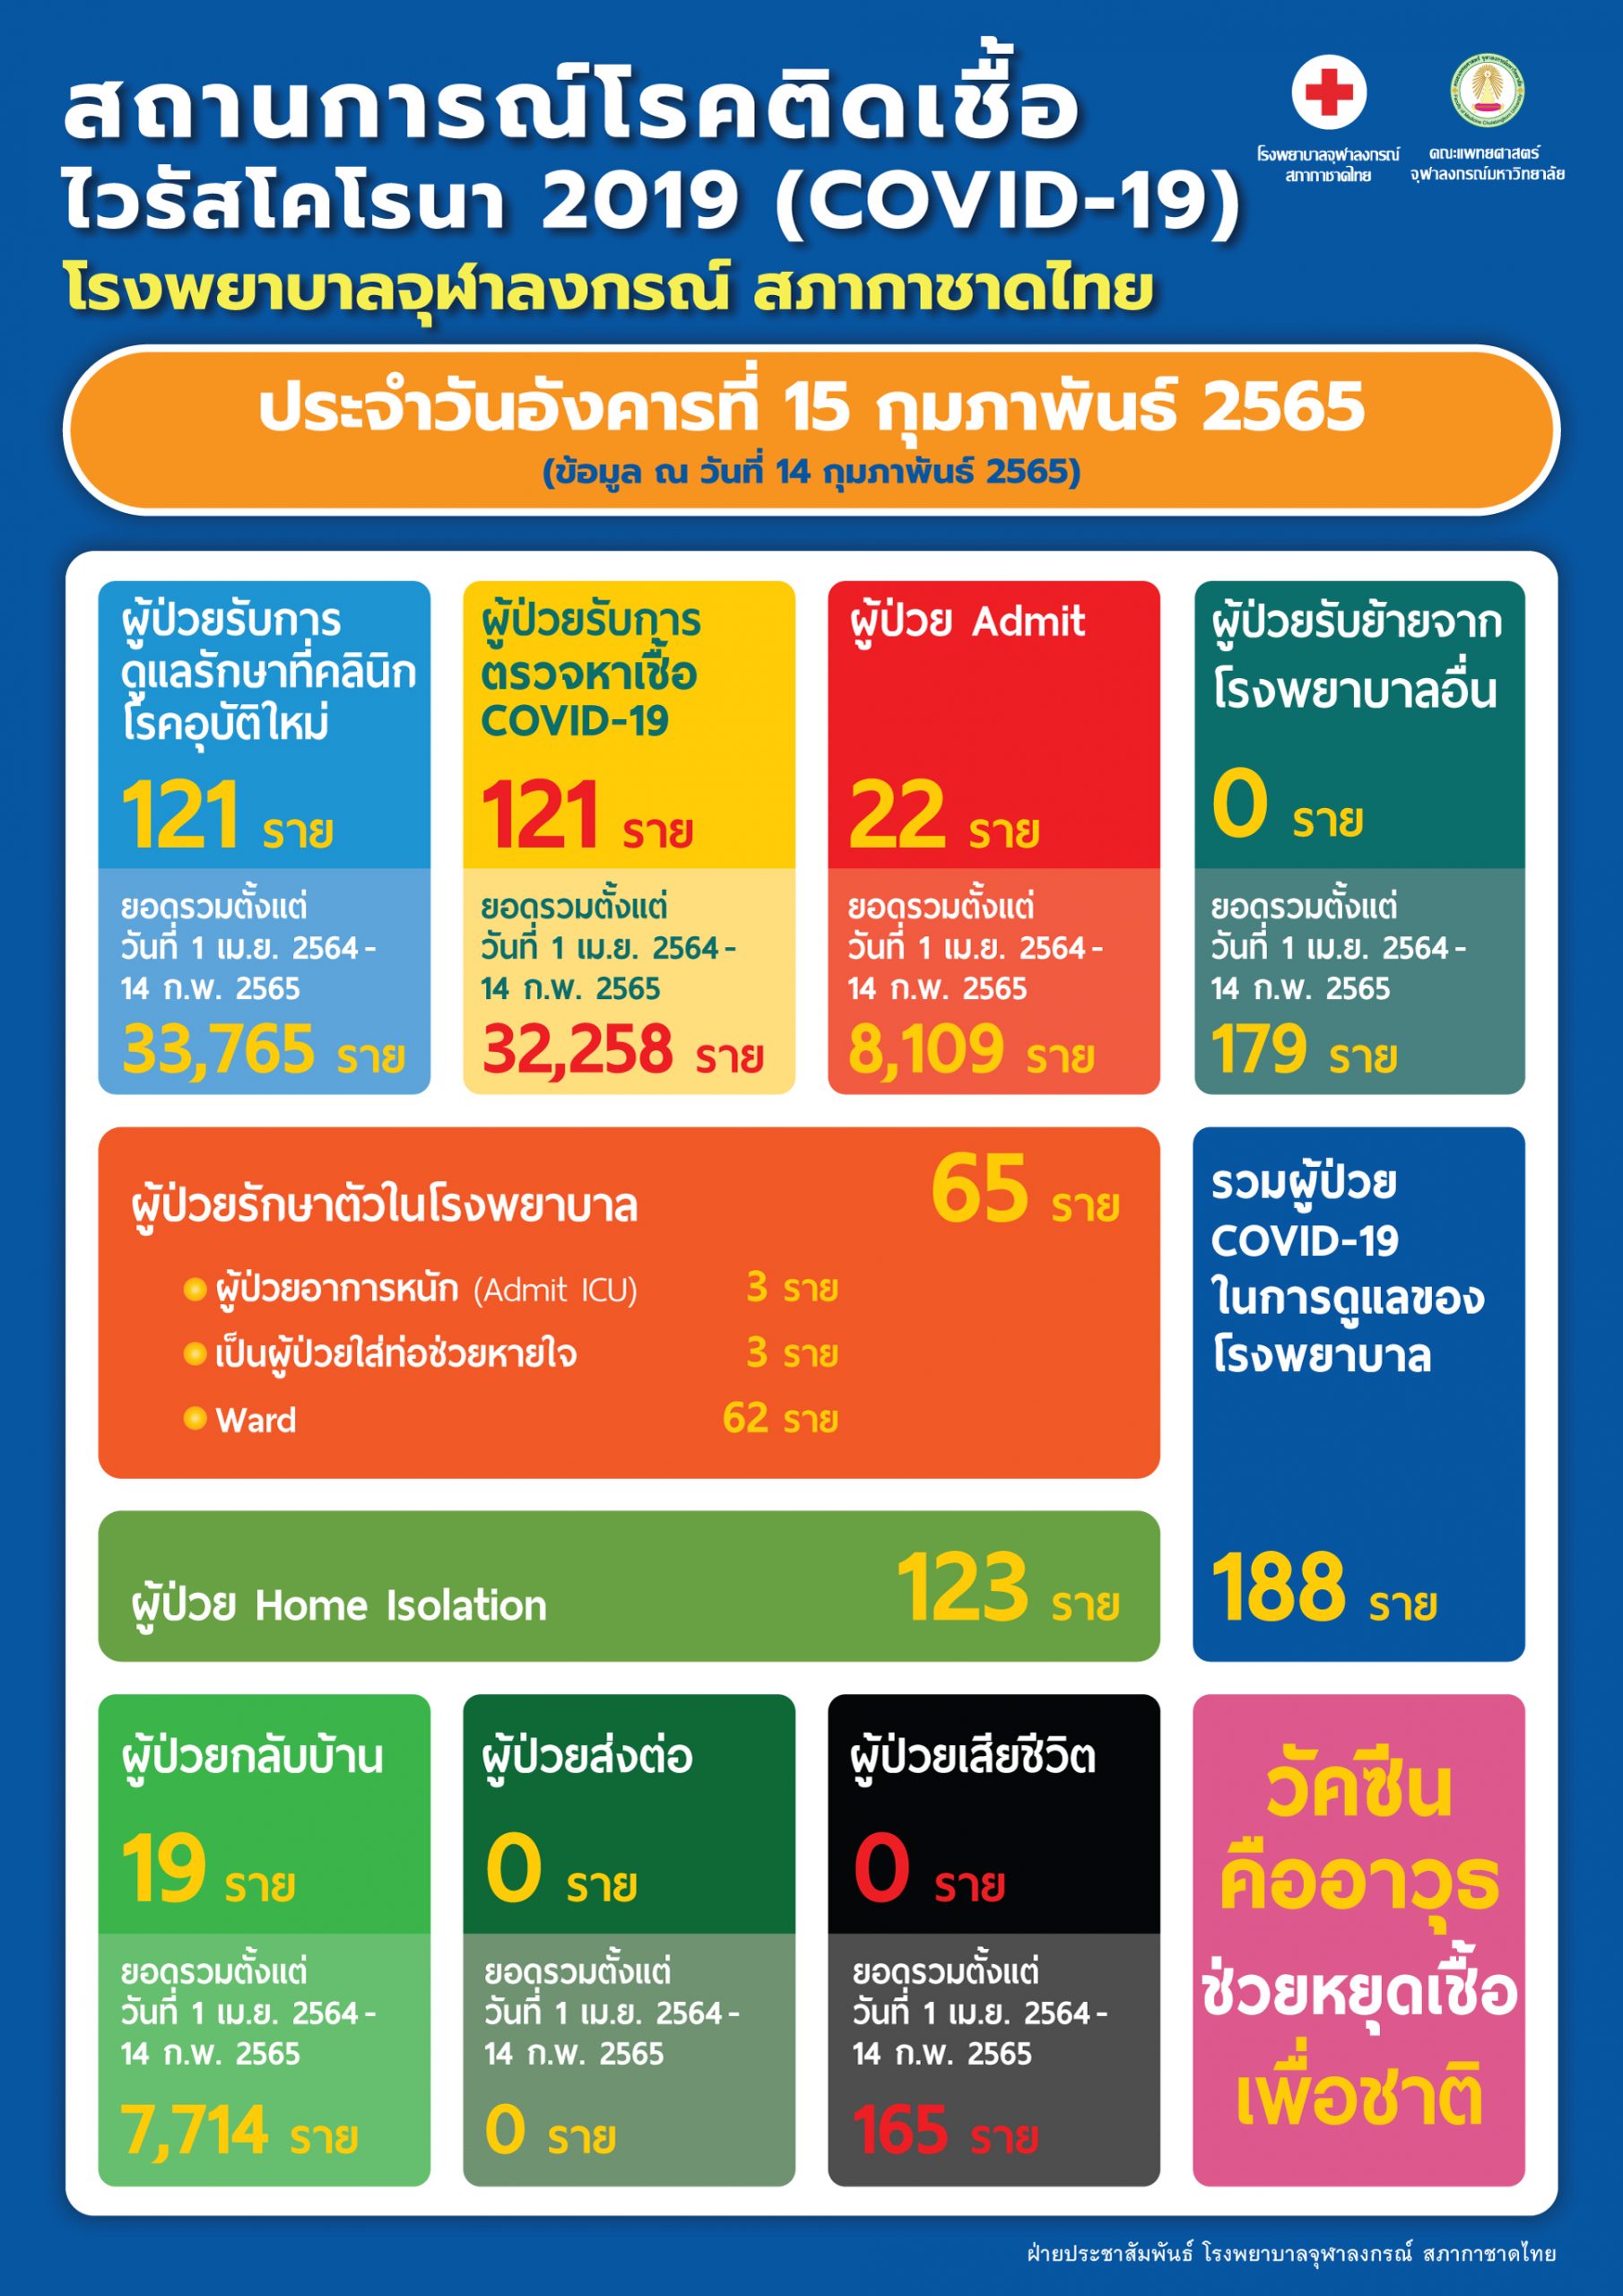 สถานการณ์โรคติดเชื้อไวรัสโคโรนา 2019 (COVID-19) โรงพยาบาลจุฬาลงกรณ์ สภากาชาดไทย ประจำวันอังคารที่ 15 กุมภาพันธ์ 2565